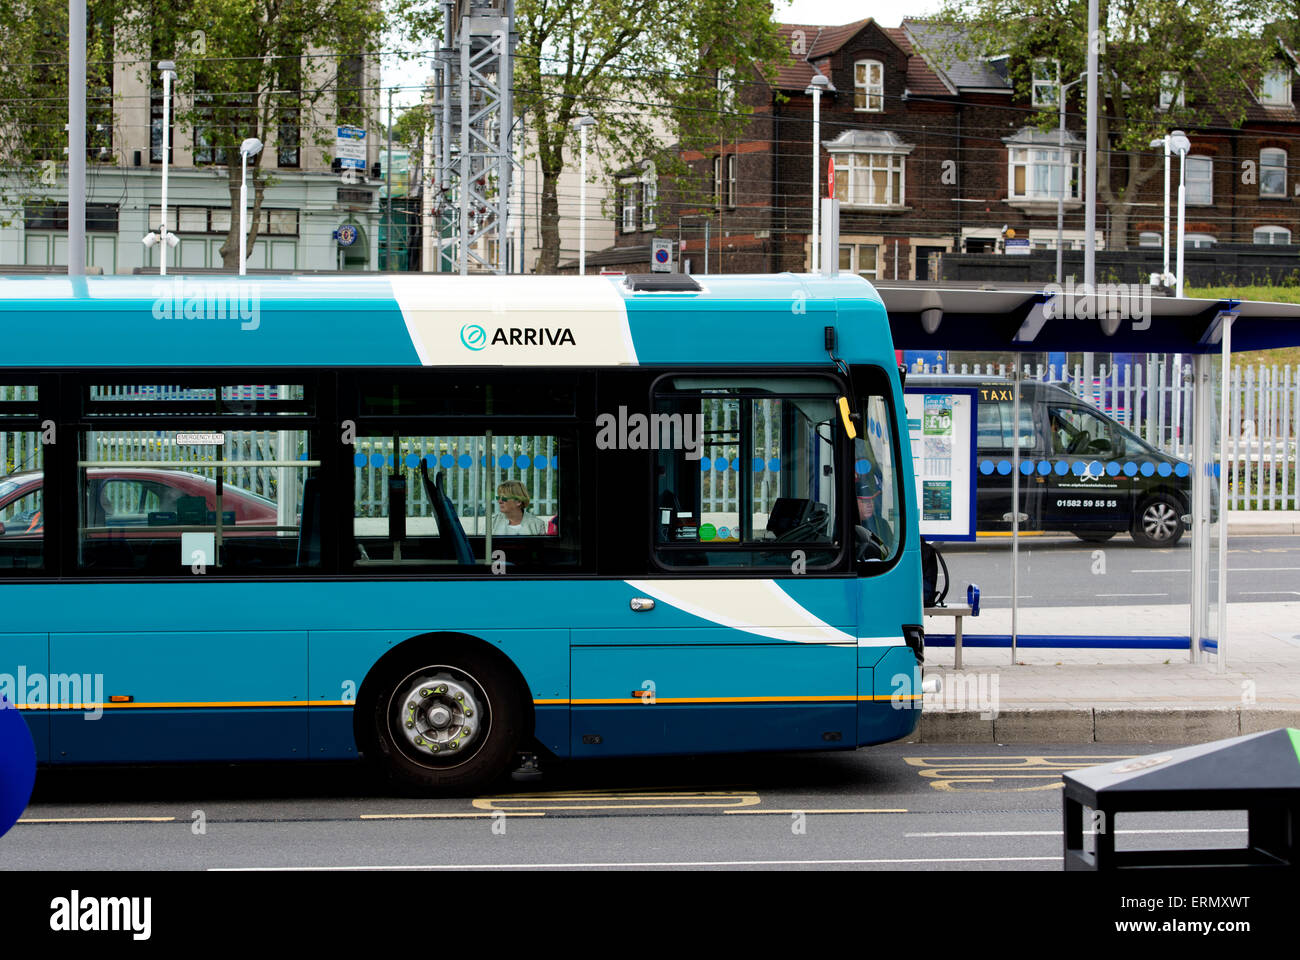 Arriva bus at Luton Station Interchange, Bedfordshire, England, UK Stock Photo